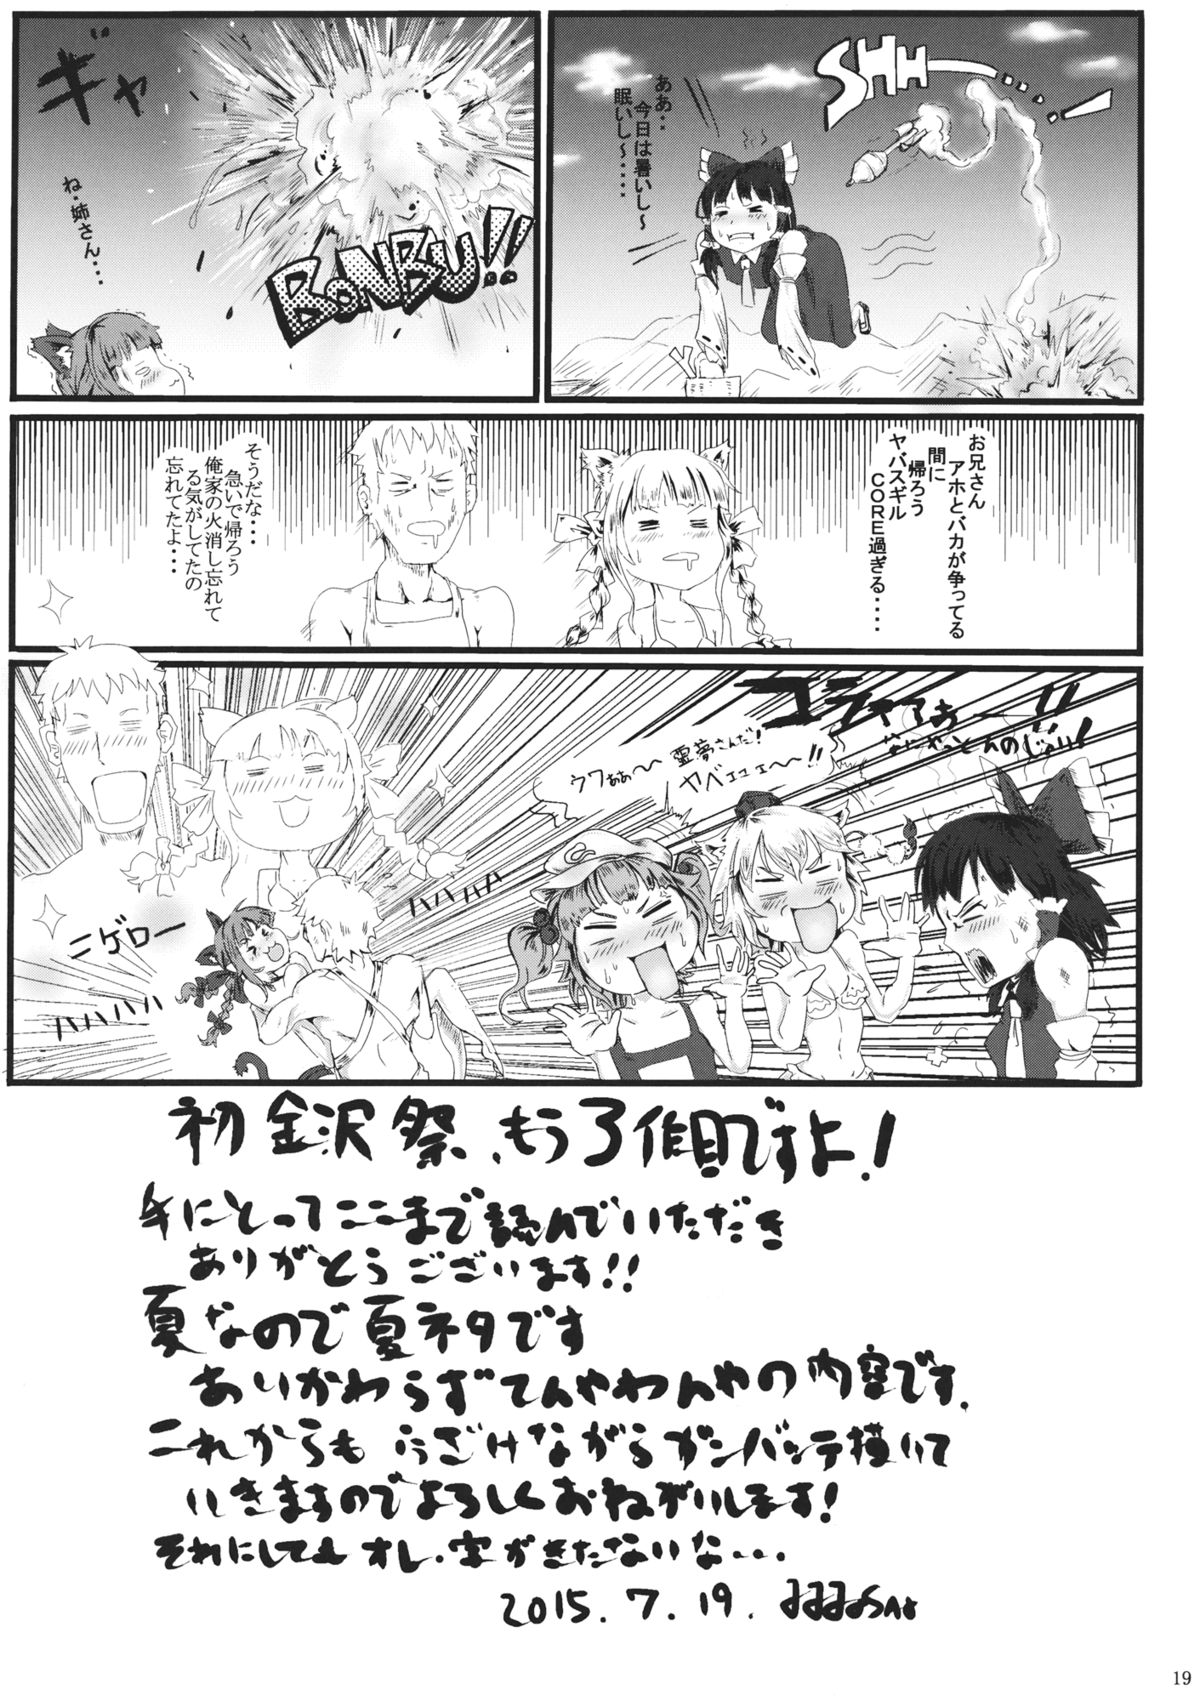 [dddosao] Natsu Catswalk (Touhou Project) page 20 full